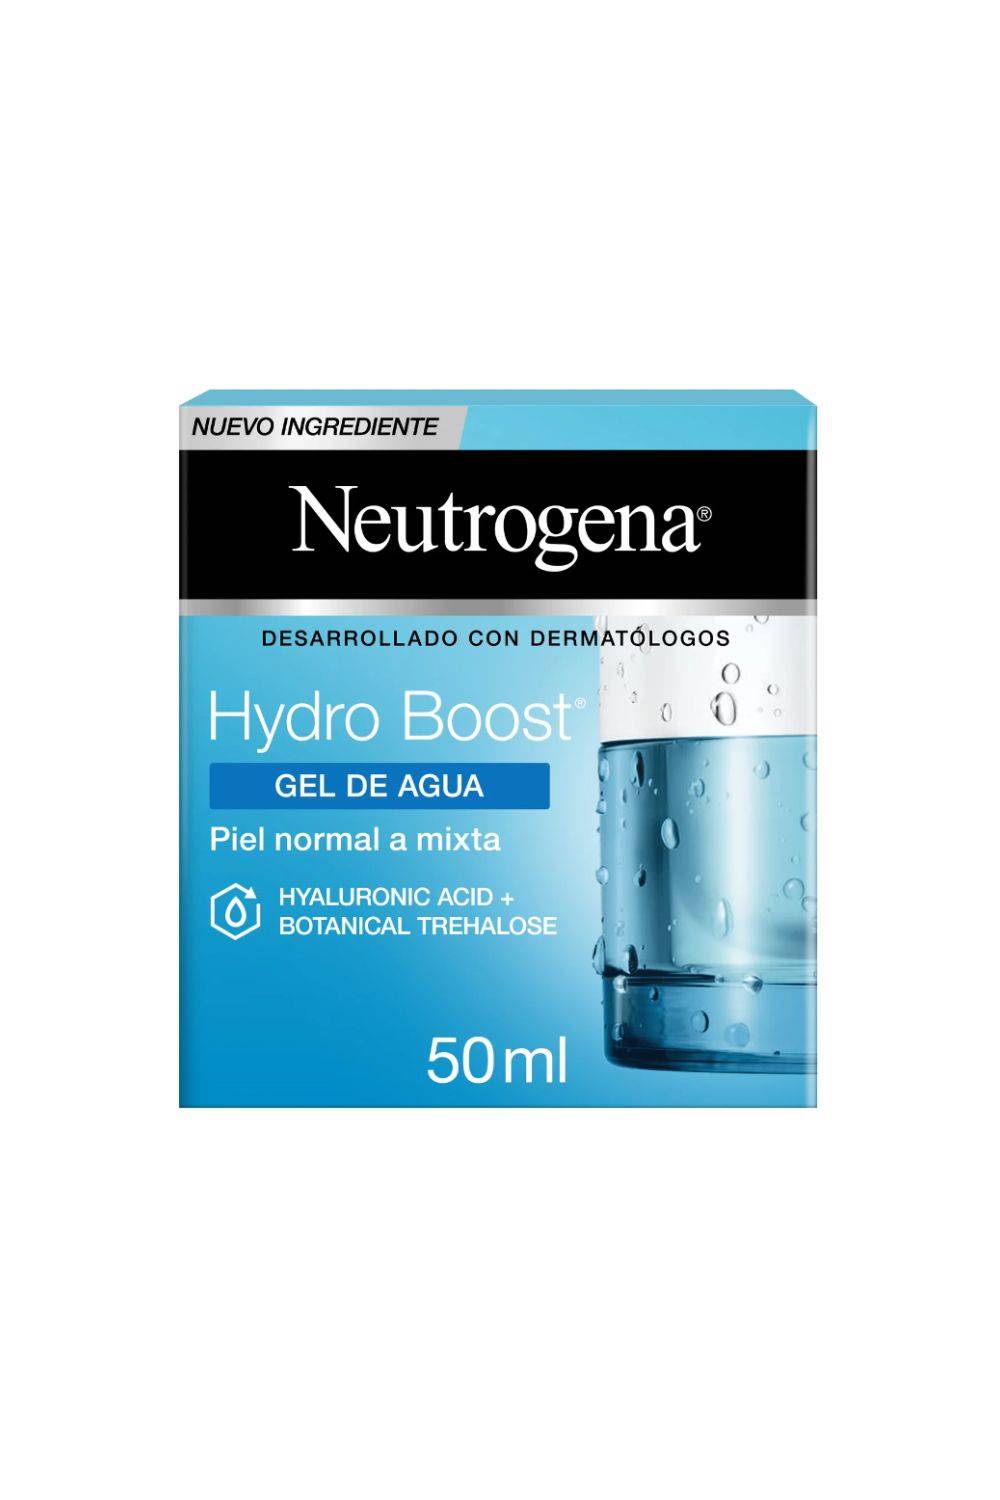 Neutrogena Hydro Boost Crema Gel Hidratante Facial con Ácido Hialurónico, 50ml